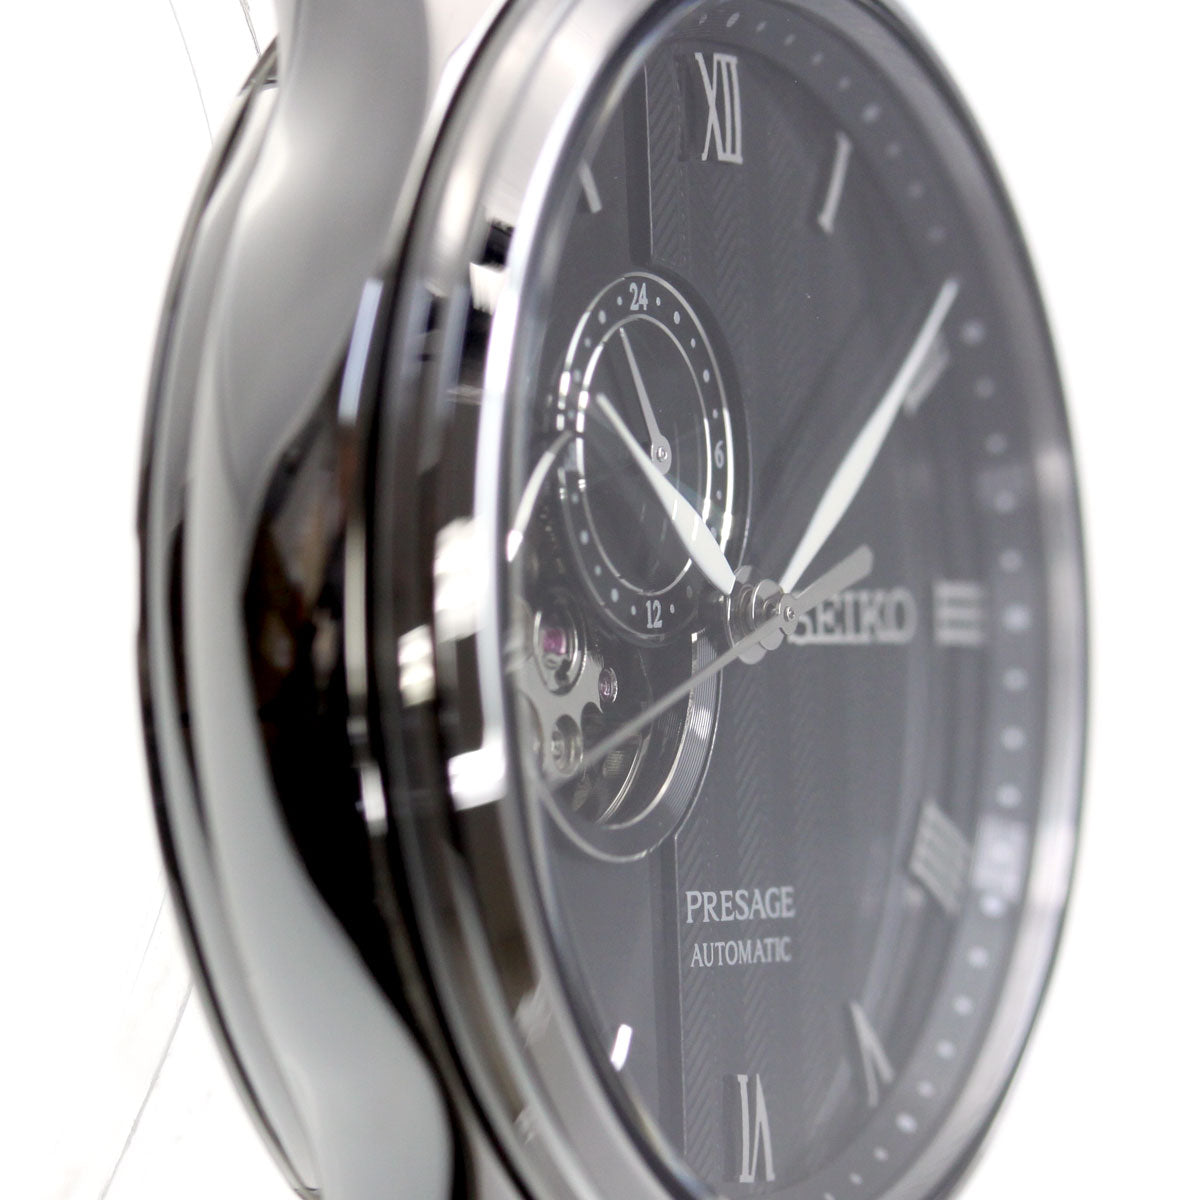 セイコー プレザージュ SEIKO PRESAGE 自動巻き メカニカル 腕時計 メンズ SARY093